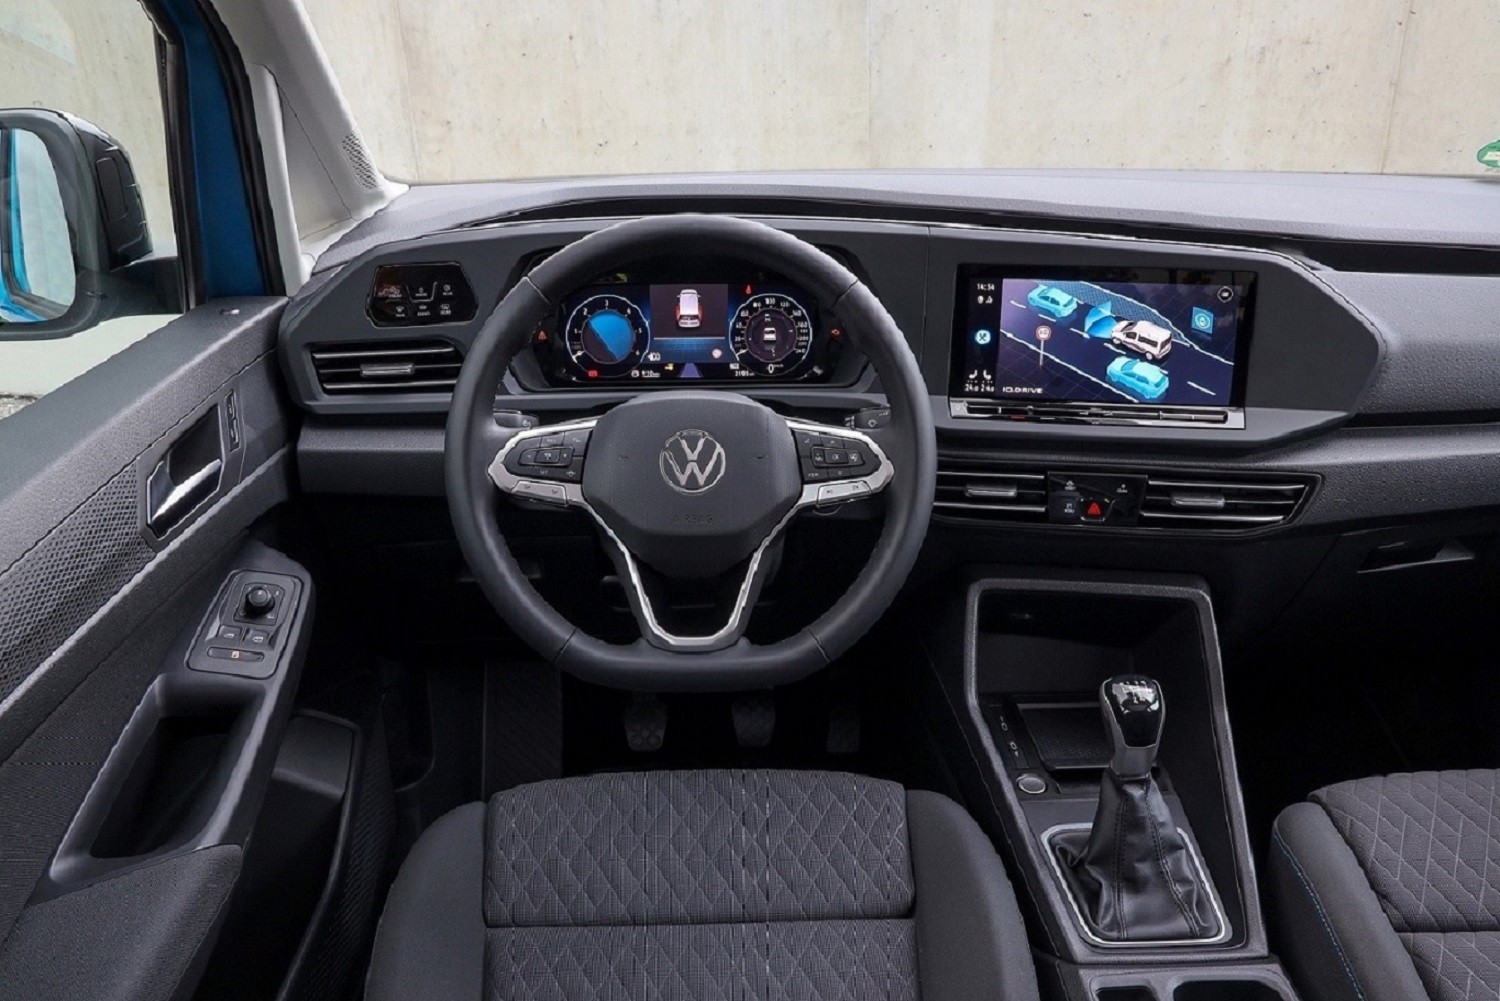 Ιδού το νέο VW Caddy!